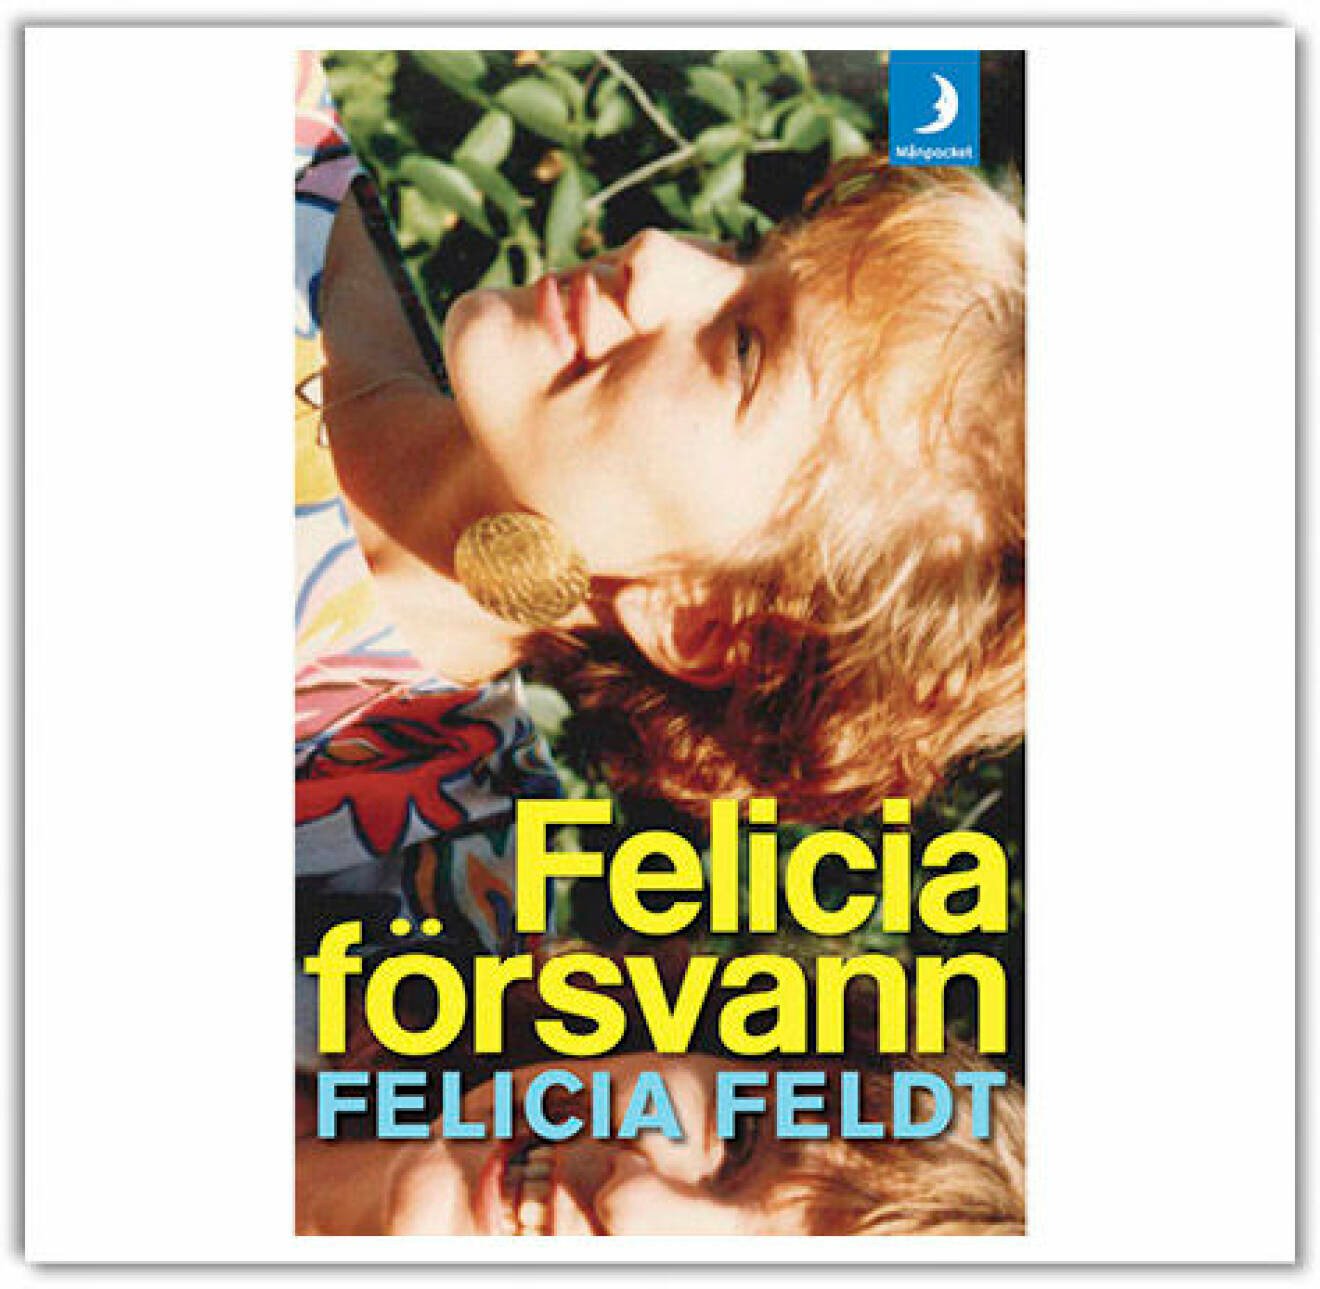 Felicia försvann, Felicia Feldt (Månpocket 2012)